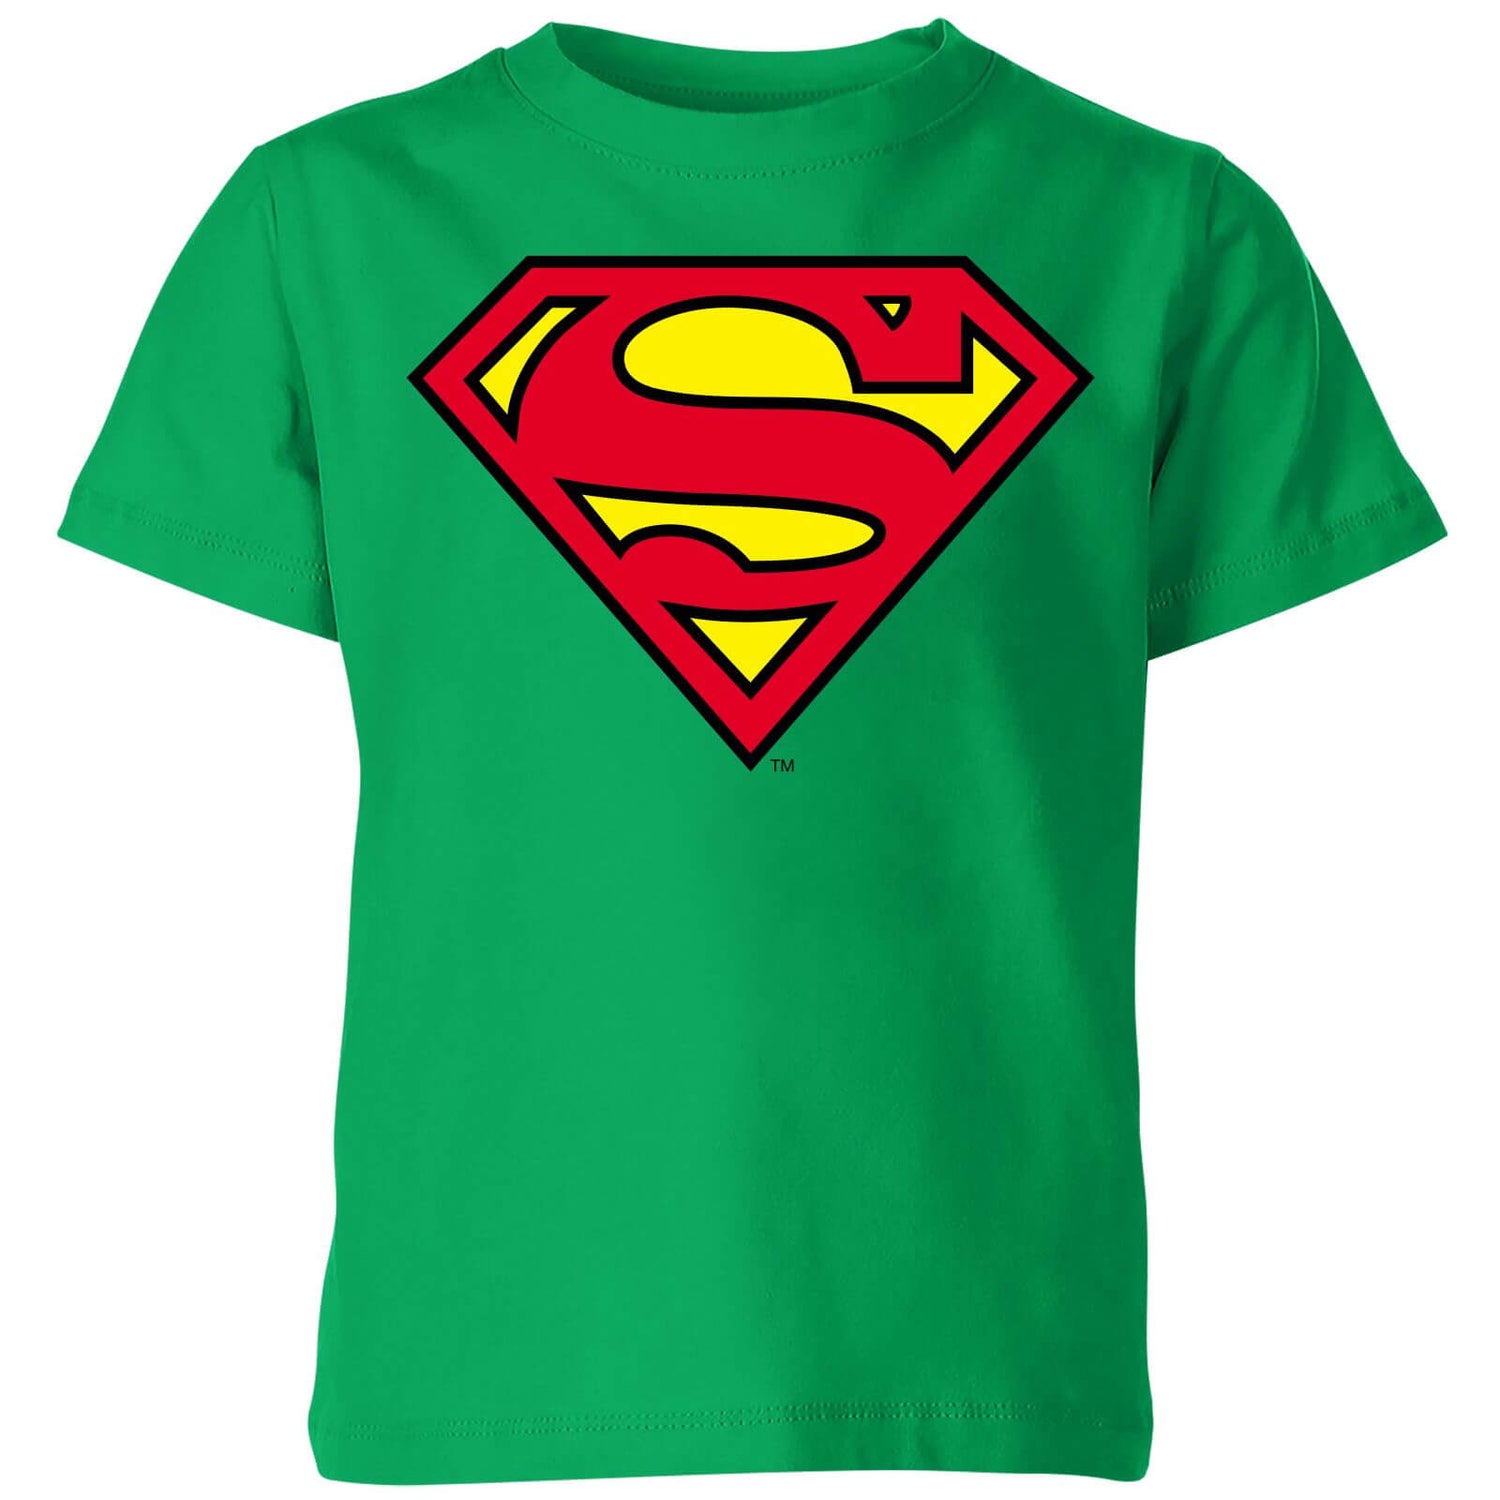 Official Superman Shield Kids' T-Shirt - Green